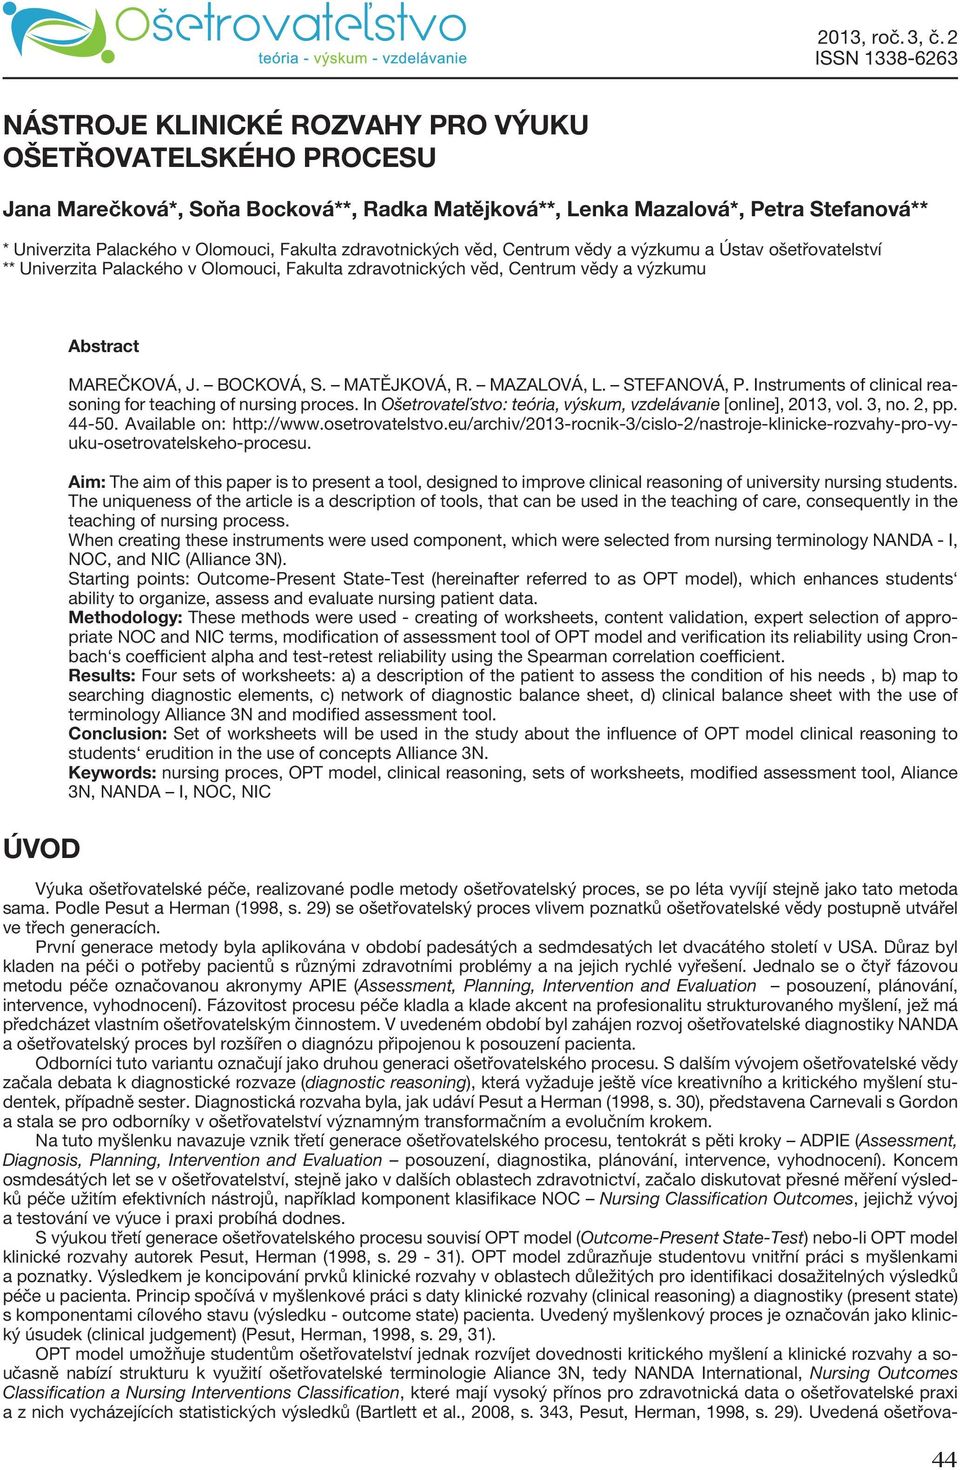 MATĚJKOVÁ, R. MAZALOVÁ, L. STEFANOVÁ, P. Instruments of clinical reasoning for teaching of nursing proces. In Ošetrovateľstvo: teória, výskum, vzdelávanie [online], 2013, vol. 3, no. 2, pp. 44-50.